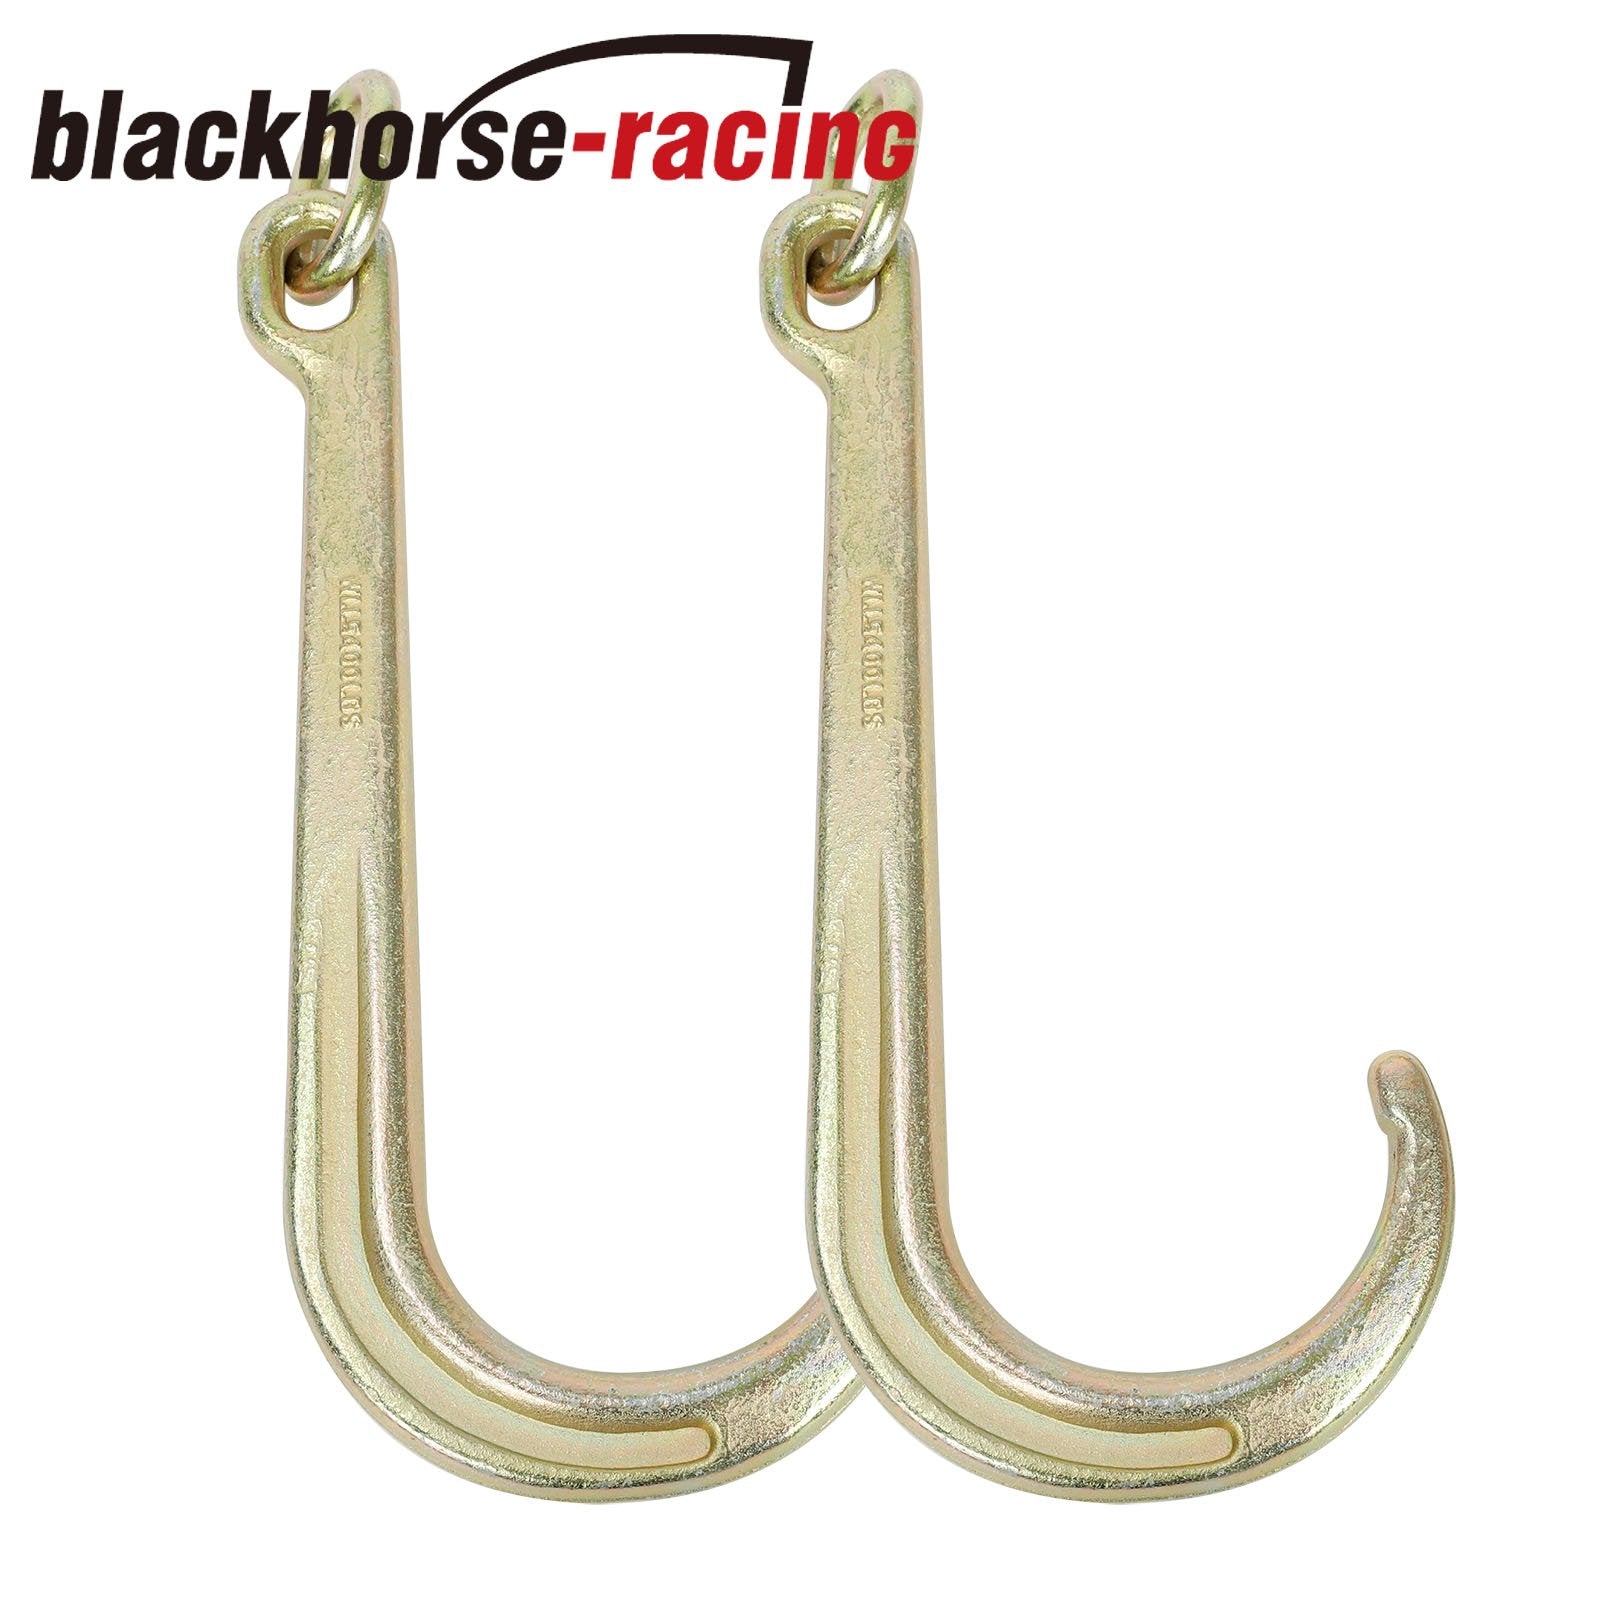 http://www.blackhorse-racing.com/cdn/shop/products/1_3_4a0b1691-95ca-4522-bb05-dc0faec3d15d.jpg?v=1660885352